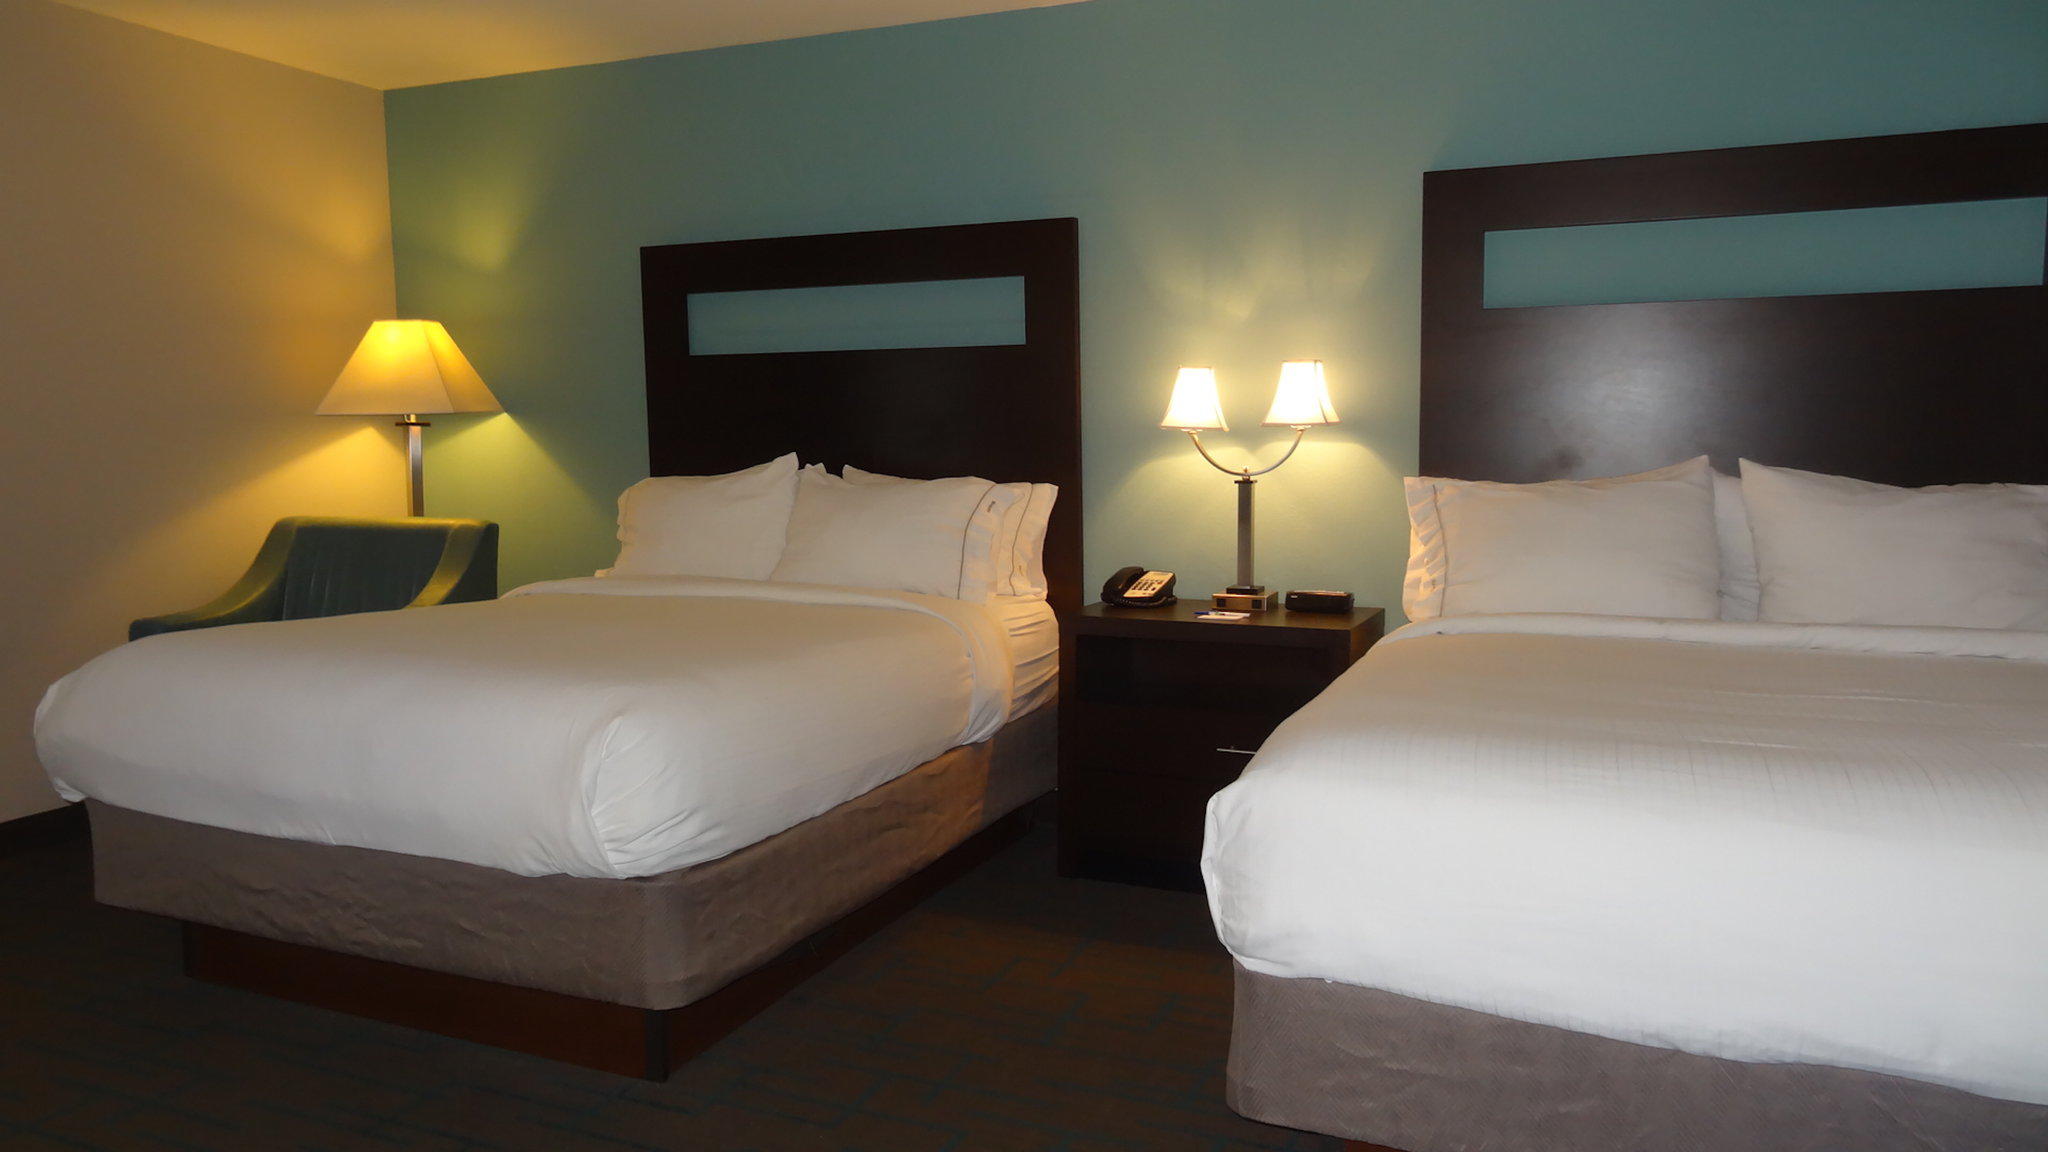 Holiday Inn Express Kansas City - Bonner Springs, an IHG Hotel Bonner Springs (913)721-5300